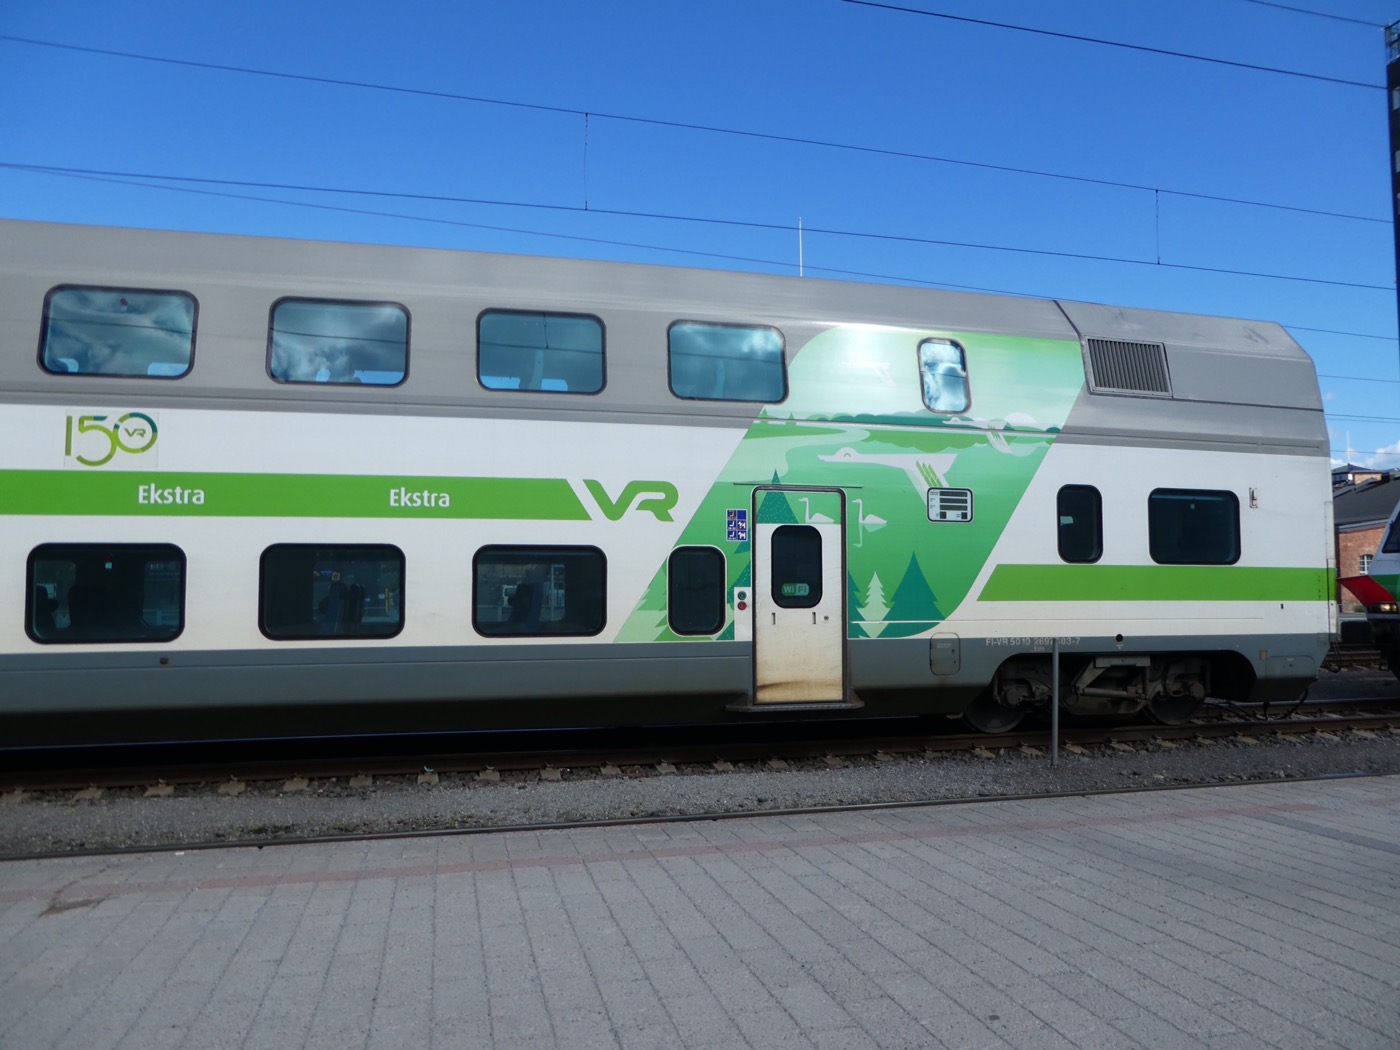 Double decker VR Train, Finland